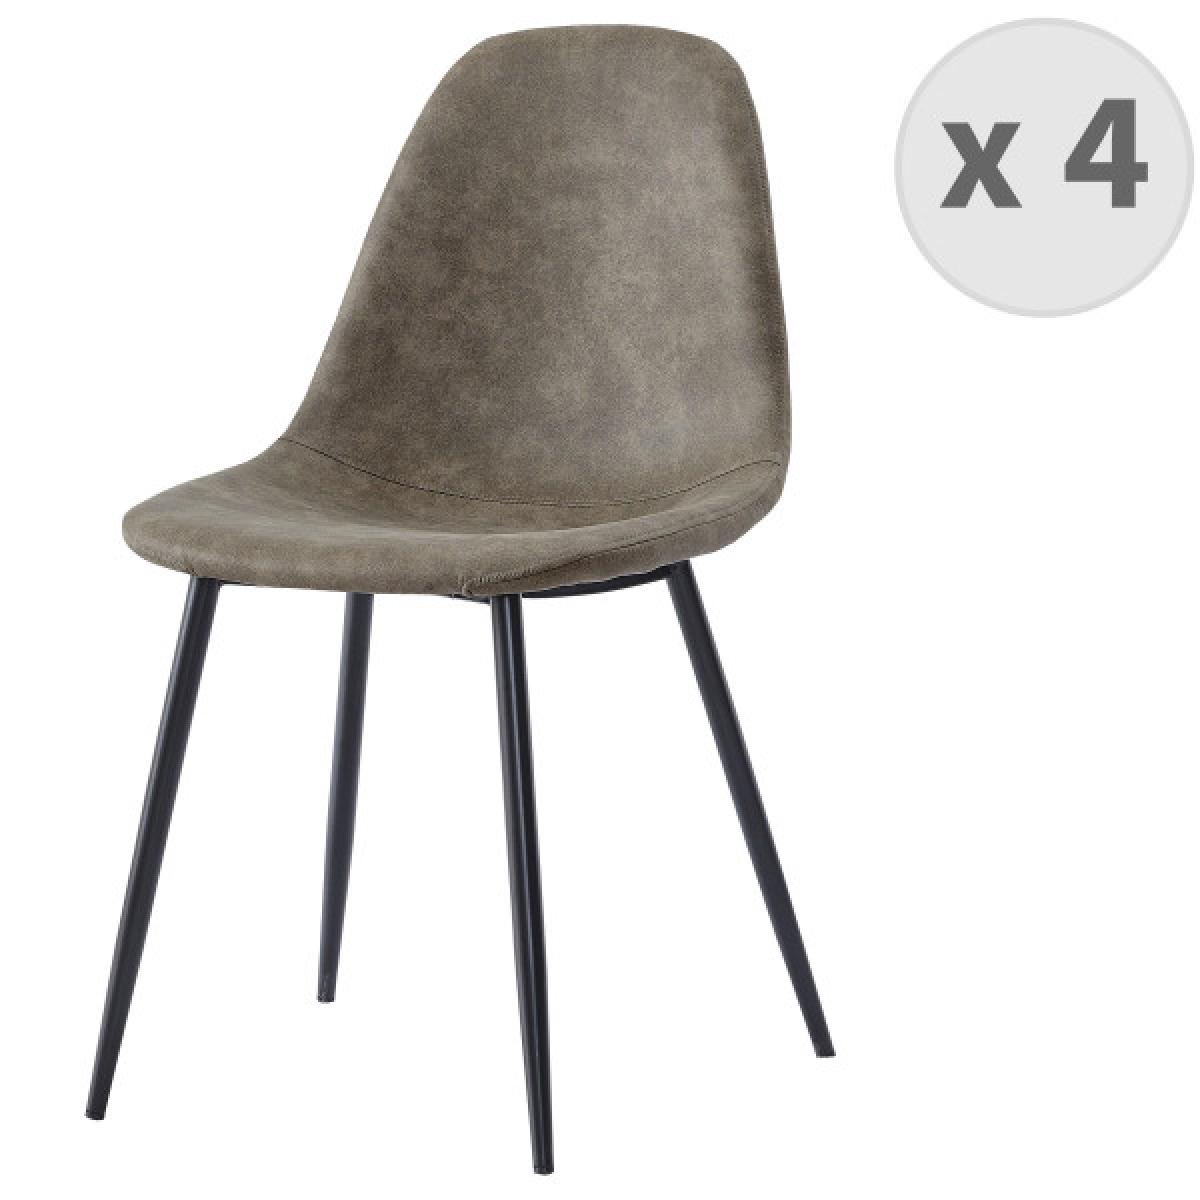 Moloo - ORLANDO - Chaise microfibre vintage brun clair pieds métal noir (x4) - Chaises